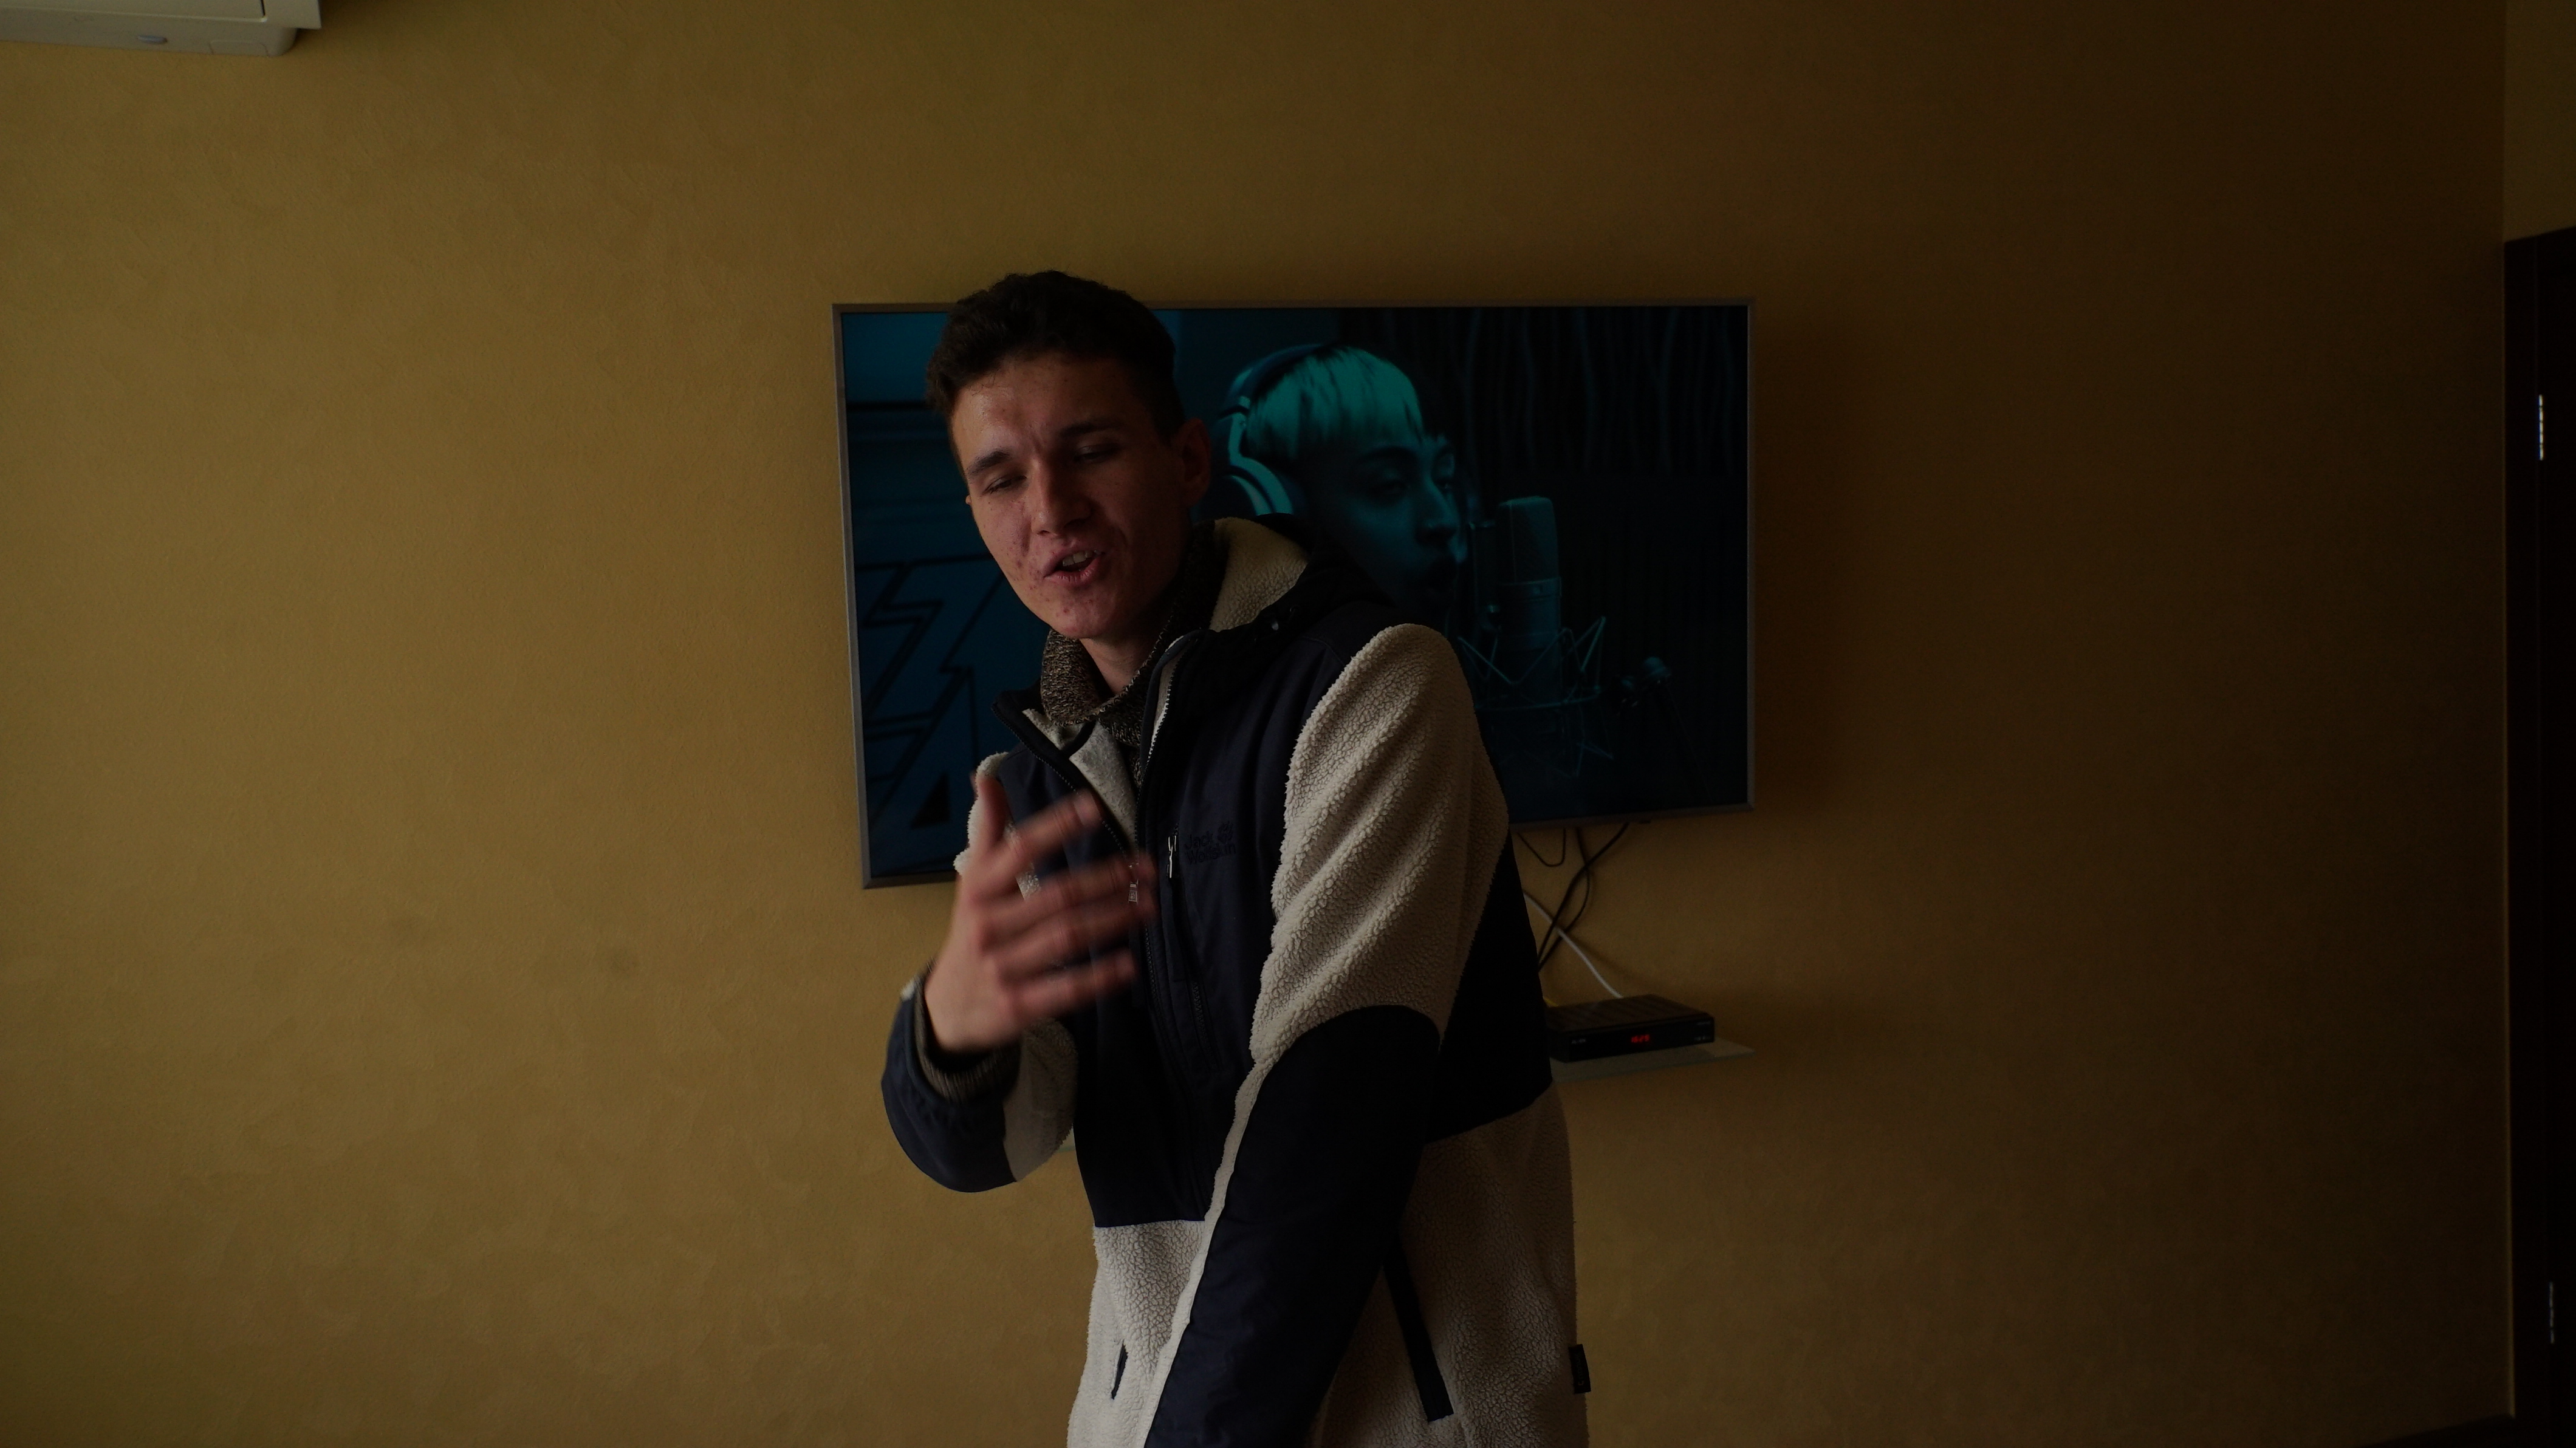 “Todos mis sueños están rotos”: el ucraniano que quería conocer a Bizarrap y quedó atrapado bajo las bombas